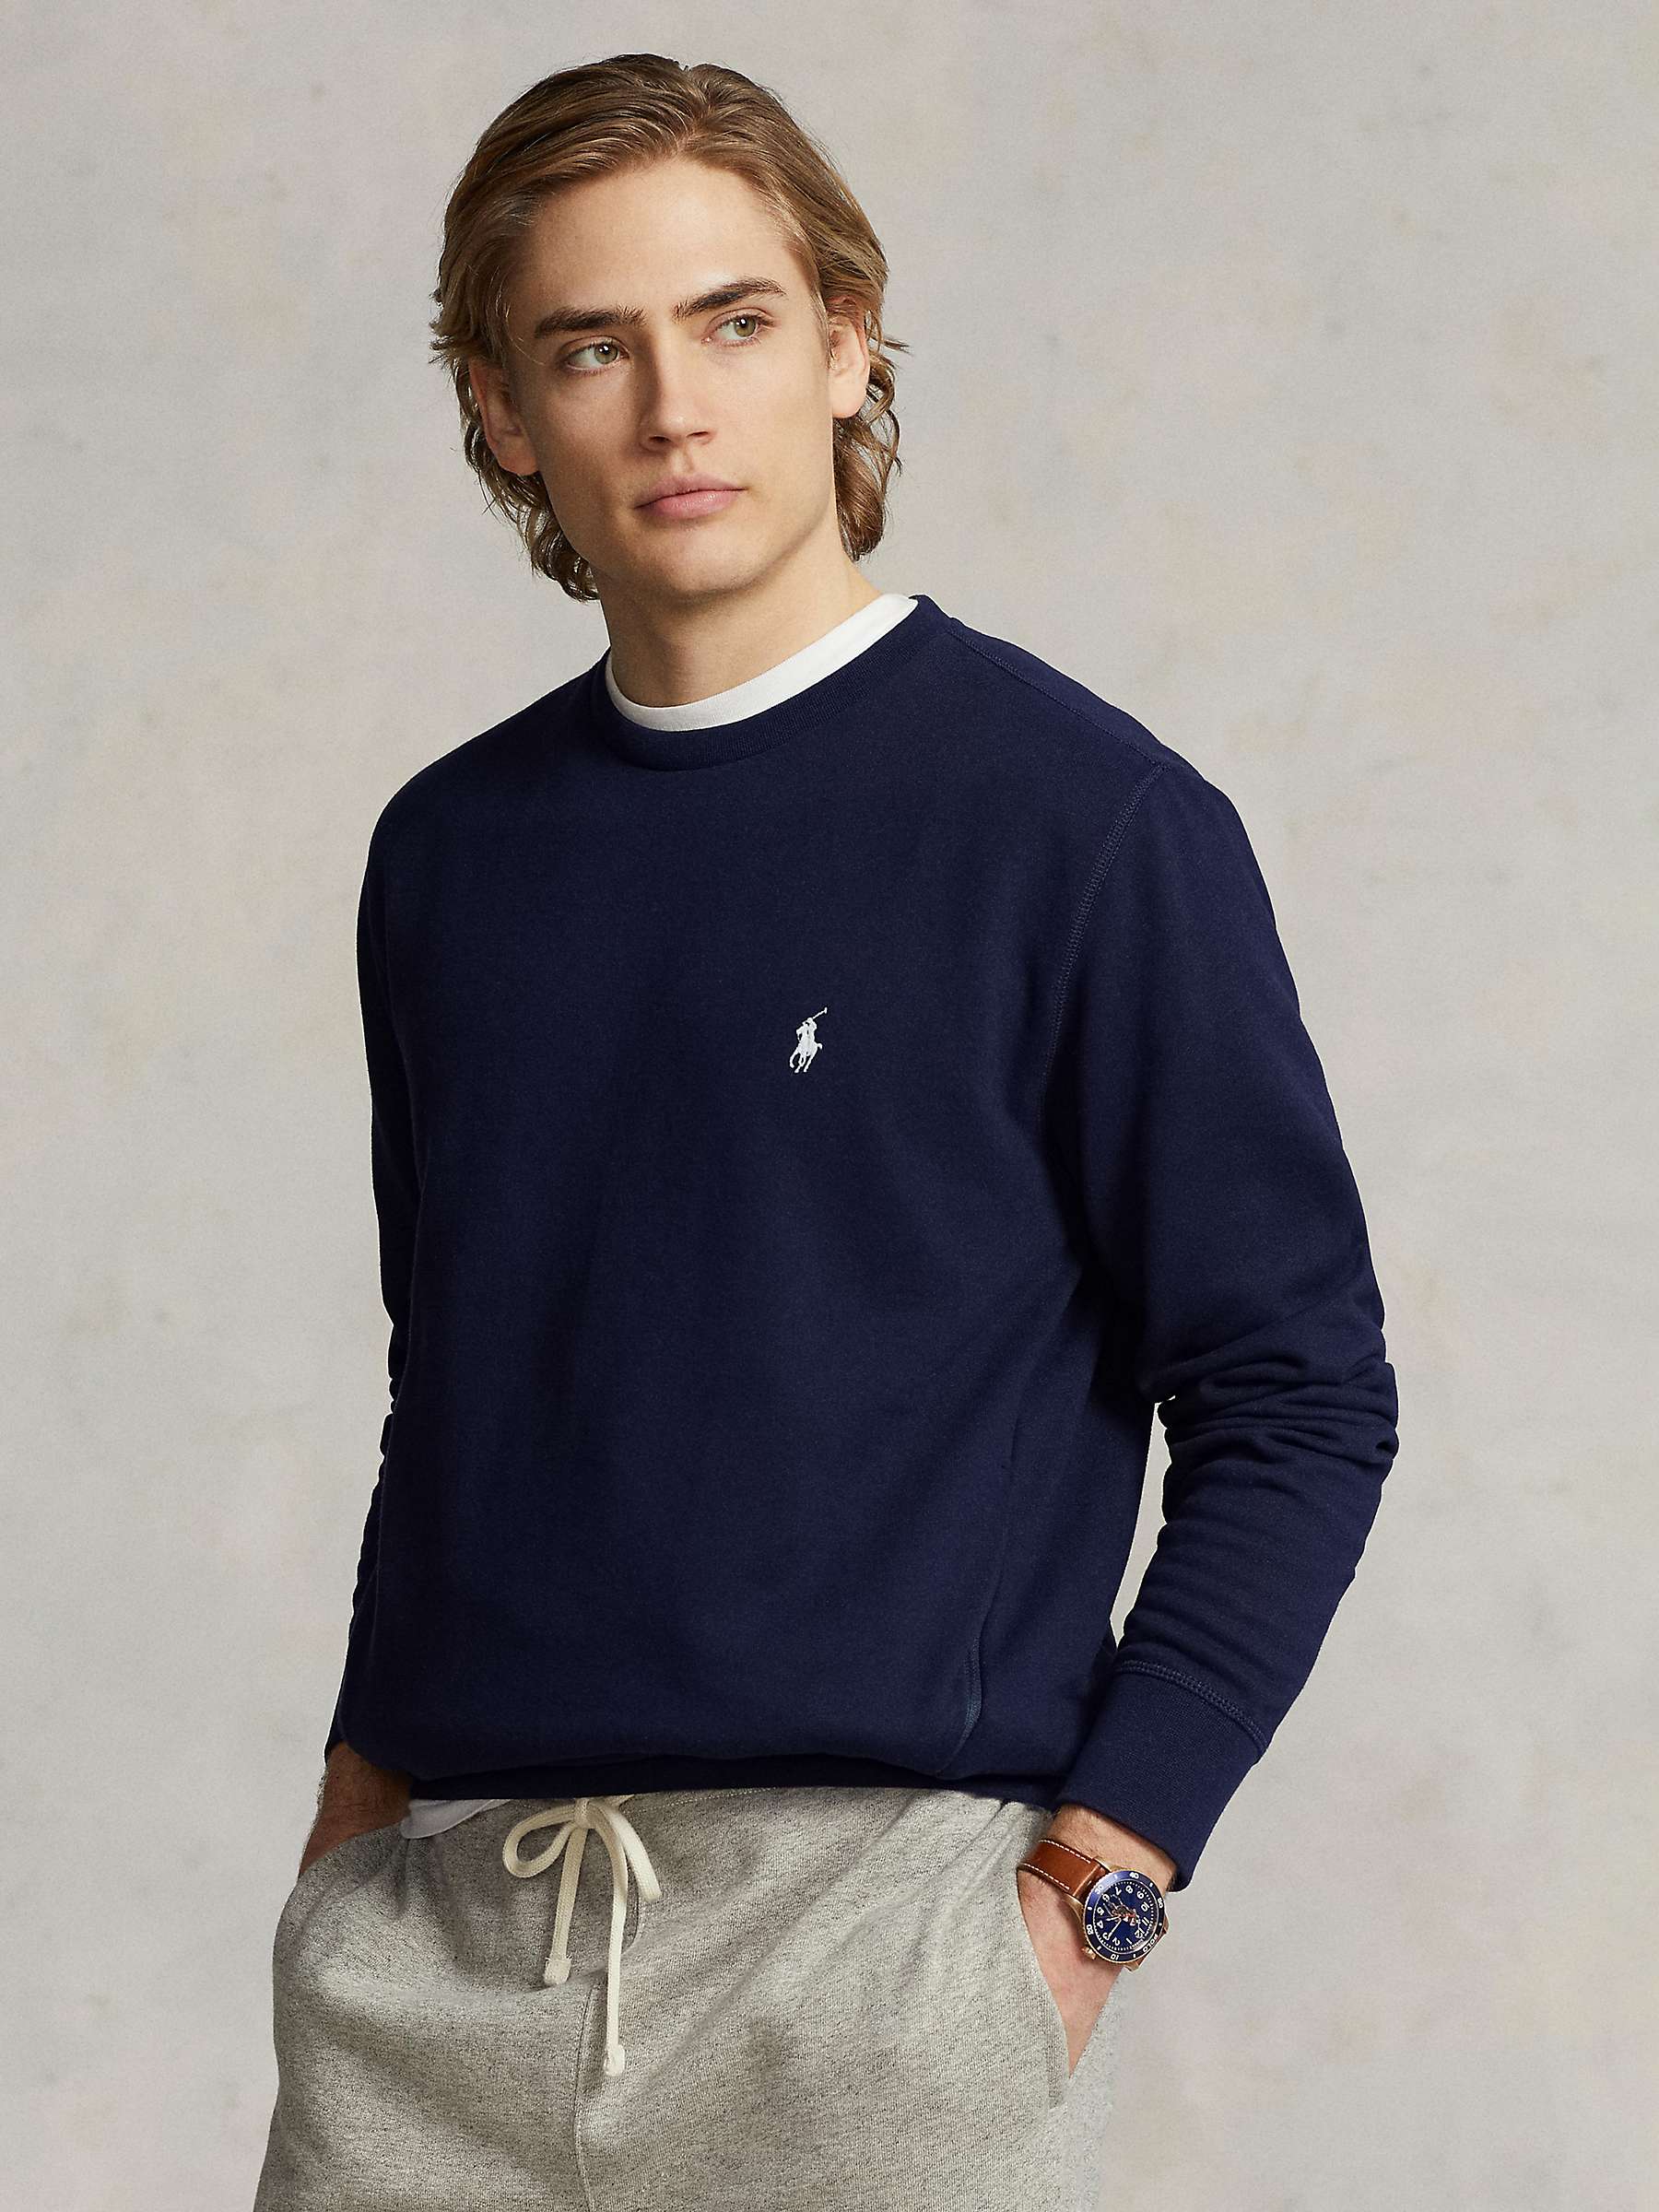 Buy Polo Ralph Lauren Sweatshirt Online at johnlewis.com